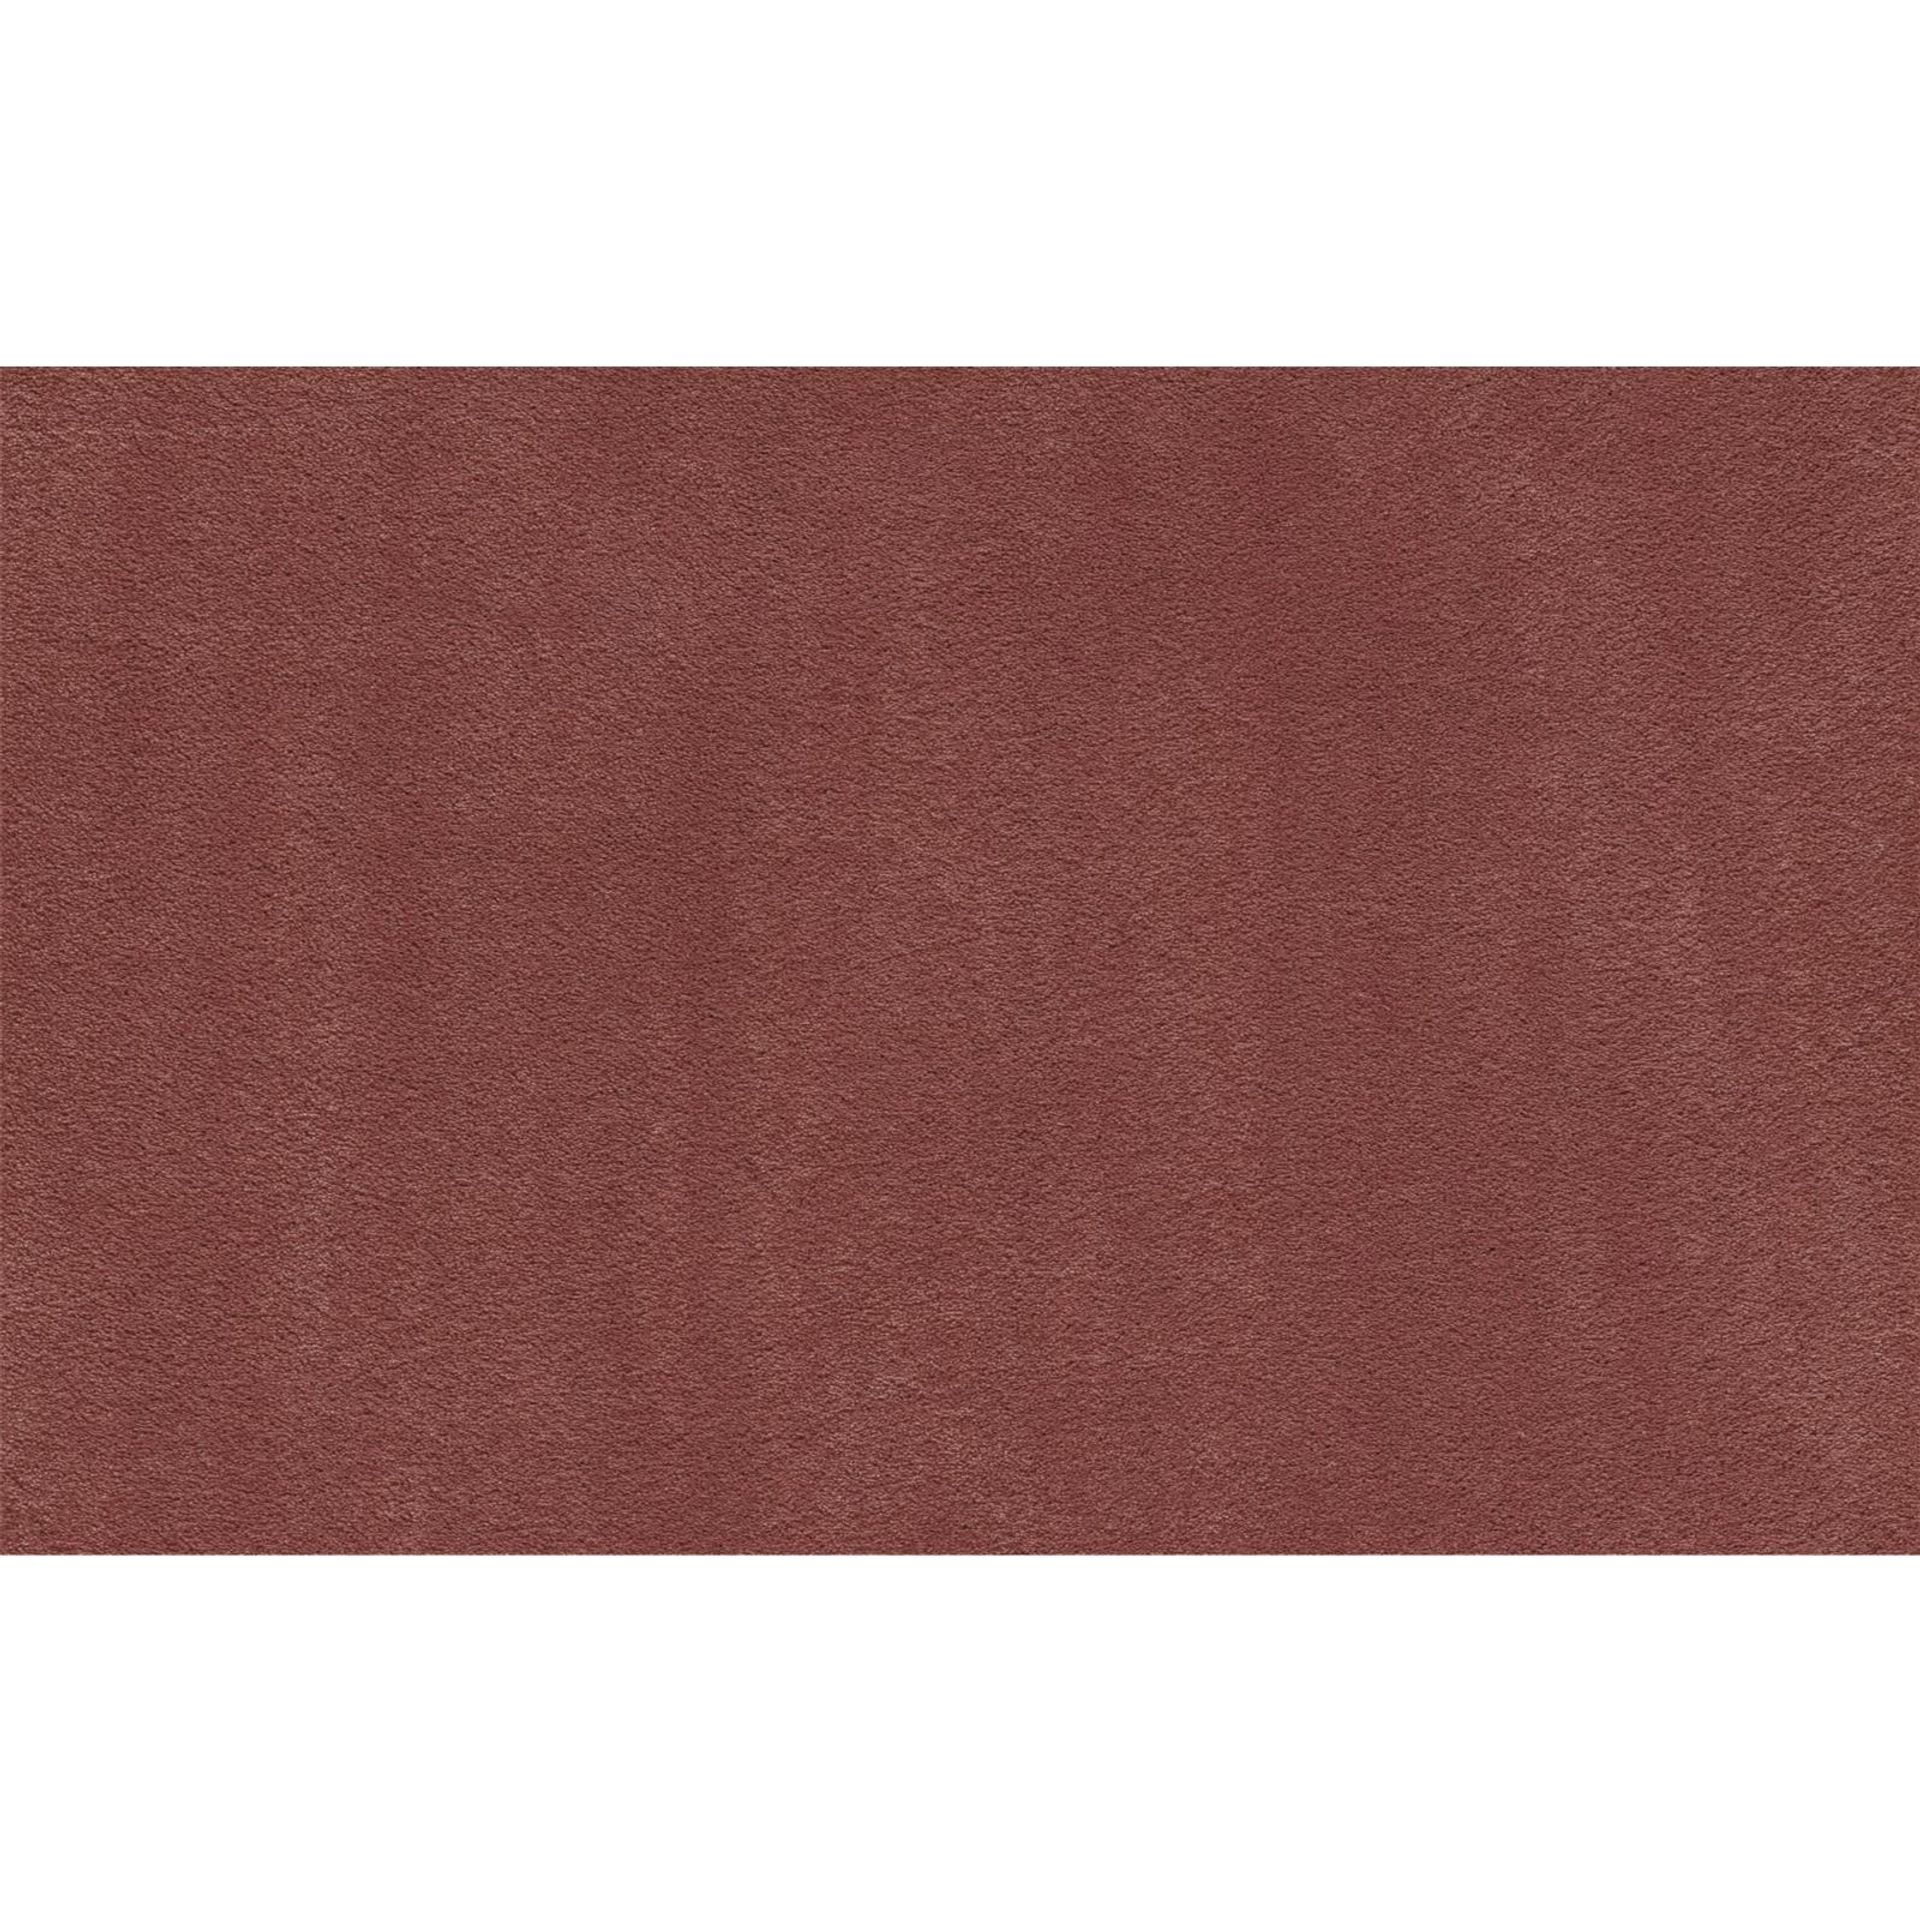 Teppichboden Vorwerk Superior 1067 MIRA Hochflor Rot 1N49 - Rollenbreite 500 cm